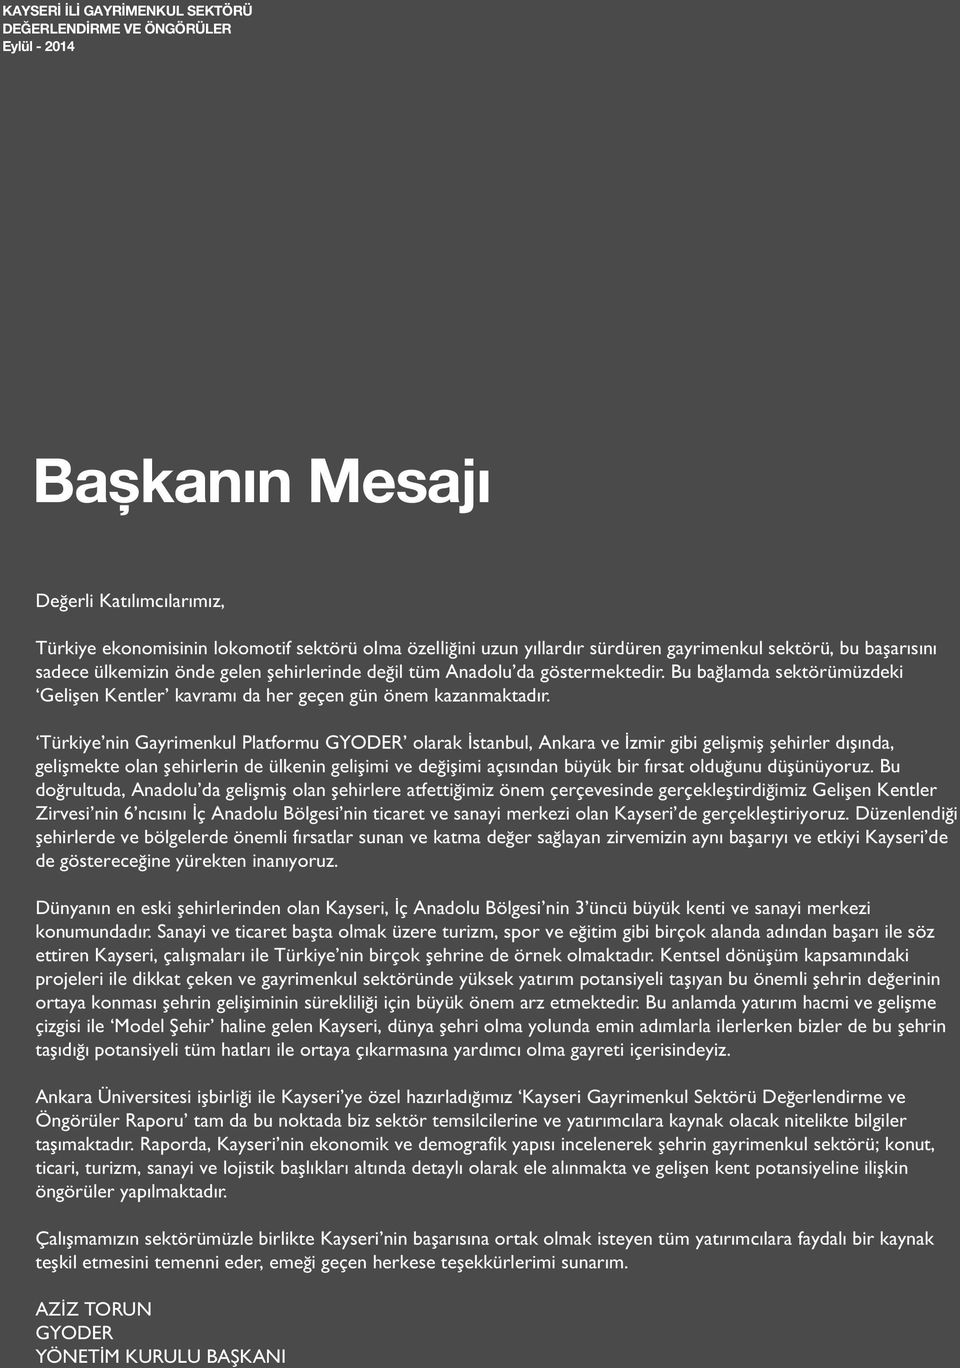 Türkiye nin Gayrimenkul Platformu GYODER olarak İstanbul, Ankara ve İzmir gibi gelişmiş şehirler dışında, gelişmekte olan şehirlerin de ülkenin gelişimi ve değişimi açısından büyük bir fırsat